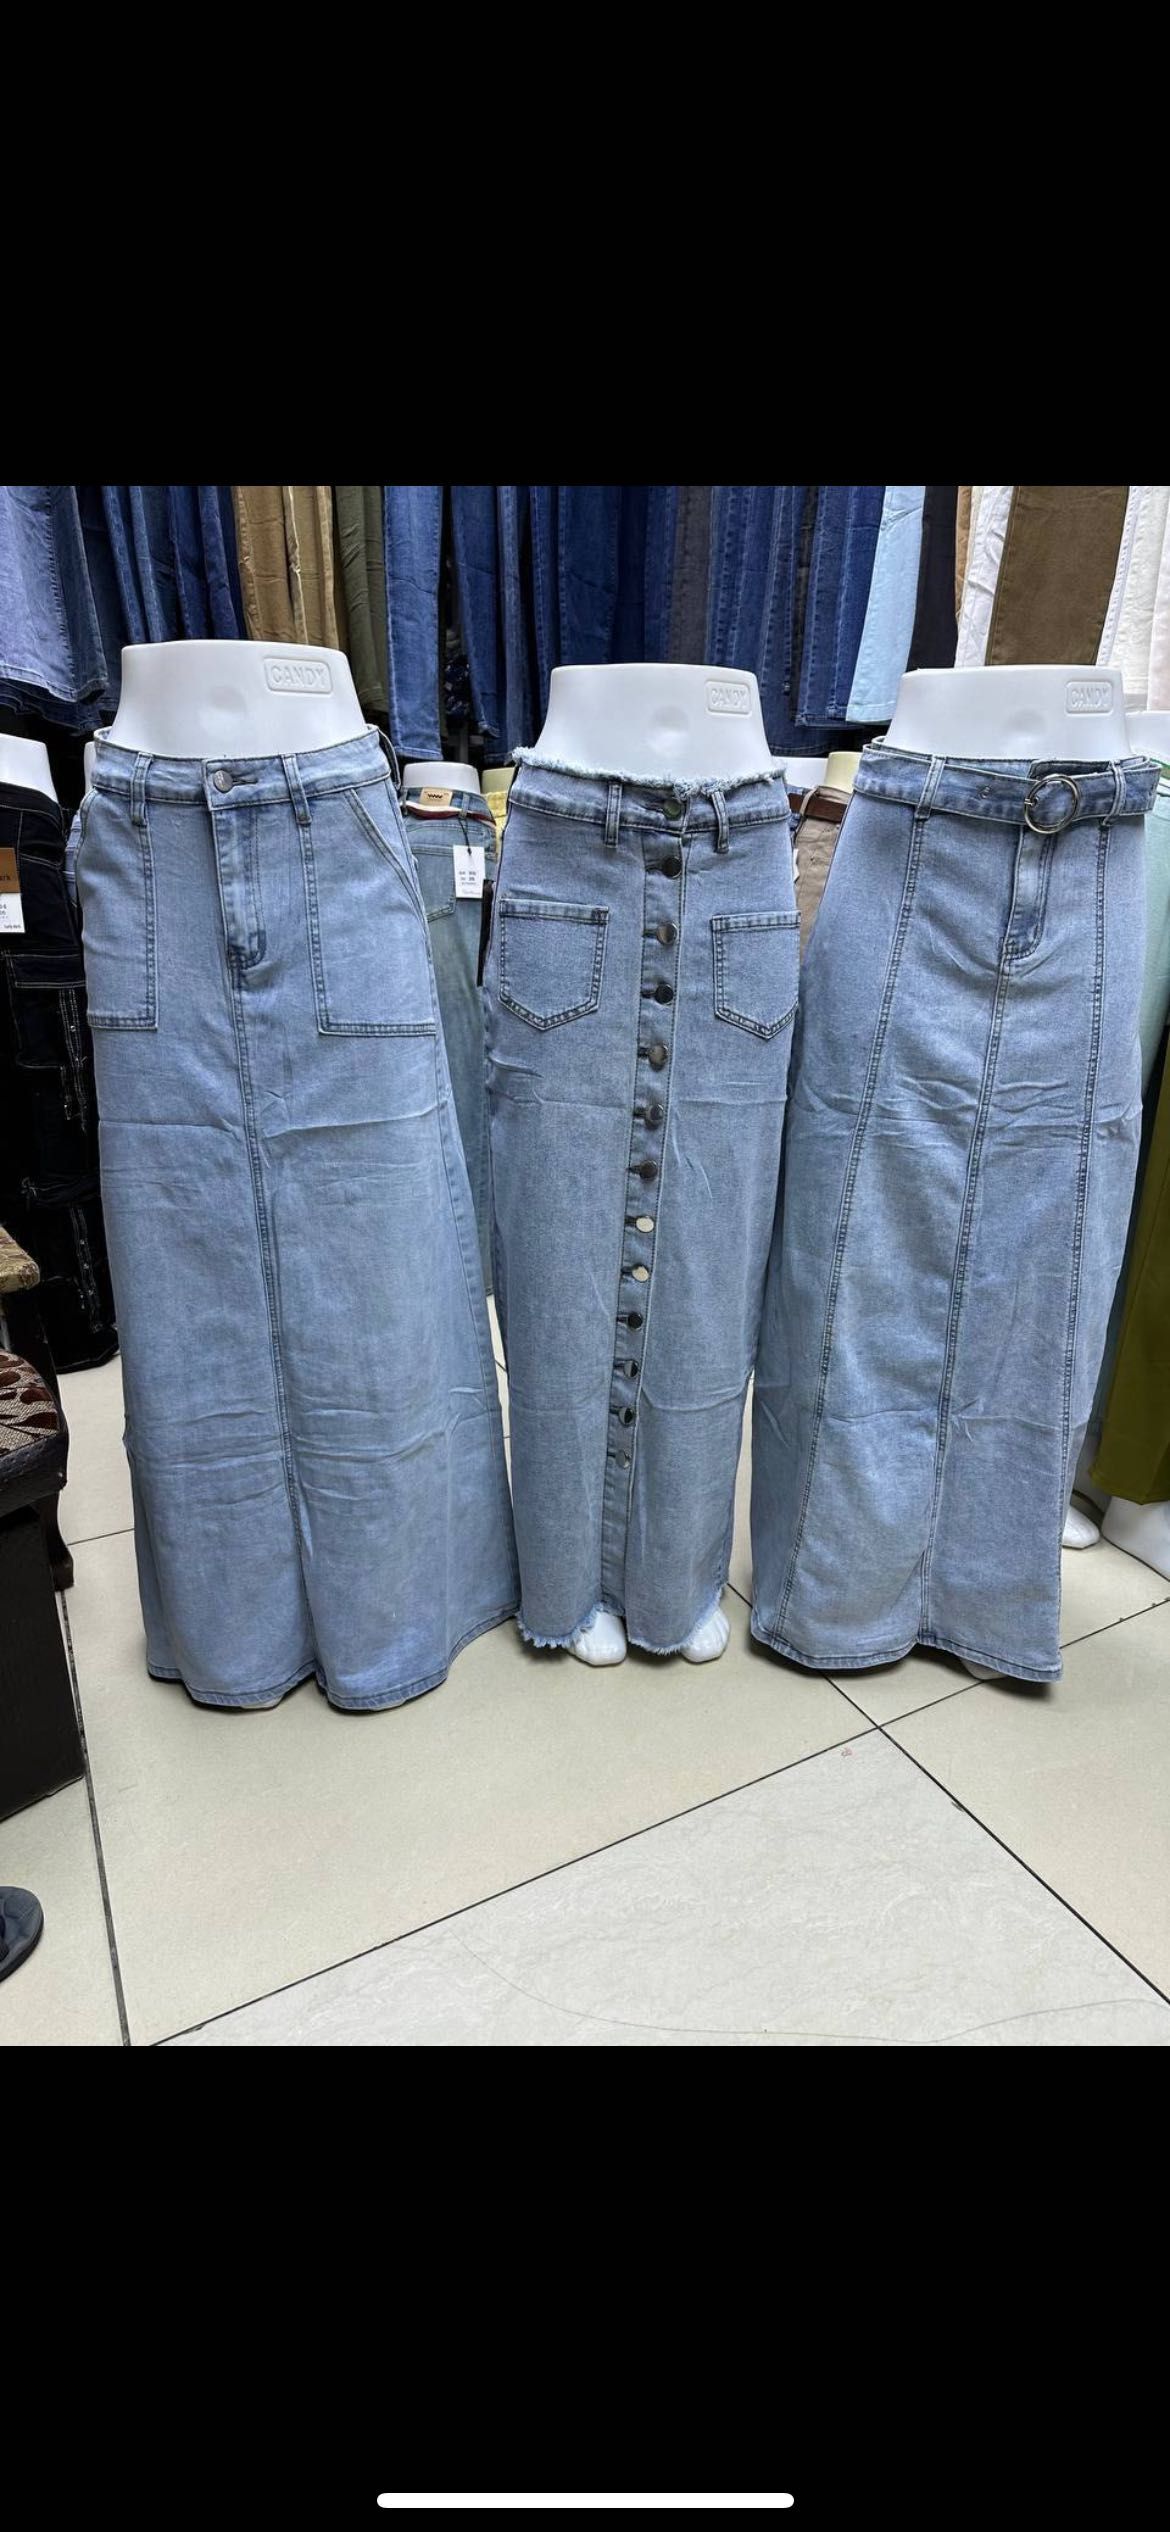 Юбки джинсовые качество люкс есть все размеры